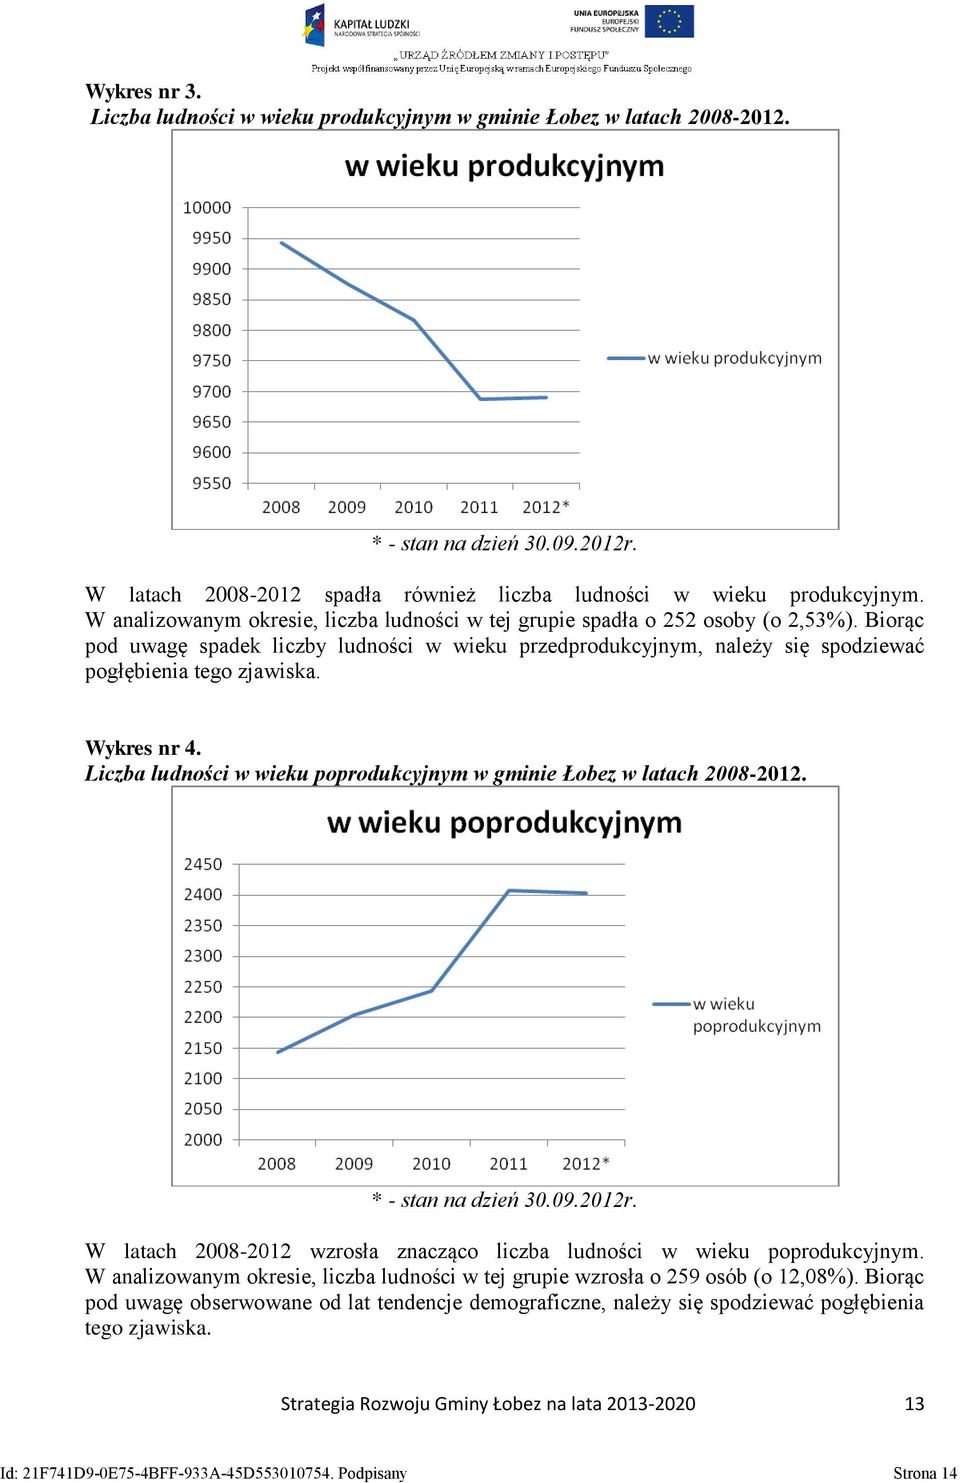 Wykres nr 4. Liczba ludności w wieku poprodukcyjnym w gminie Łobez w latach 2008-2012. * - stan na dzień 30.09.2012r. W latach 2008-2012 wzrosła znacząco liczba ludności w wieku poprodukcyjnym.